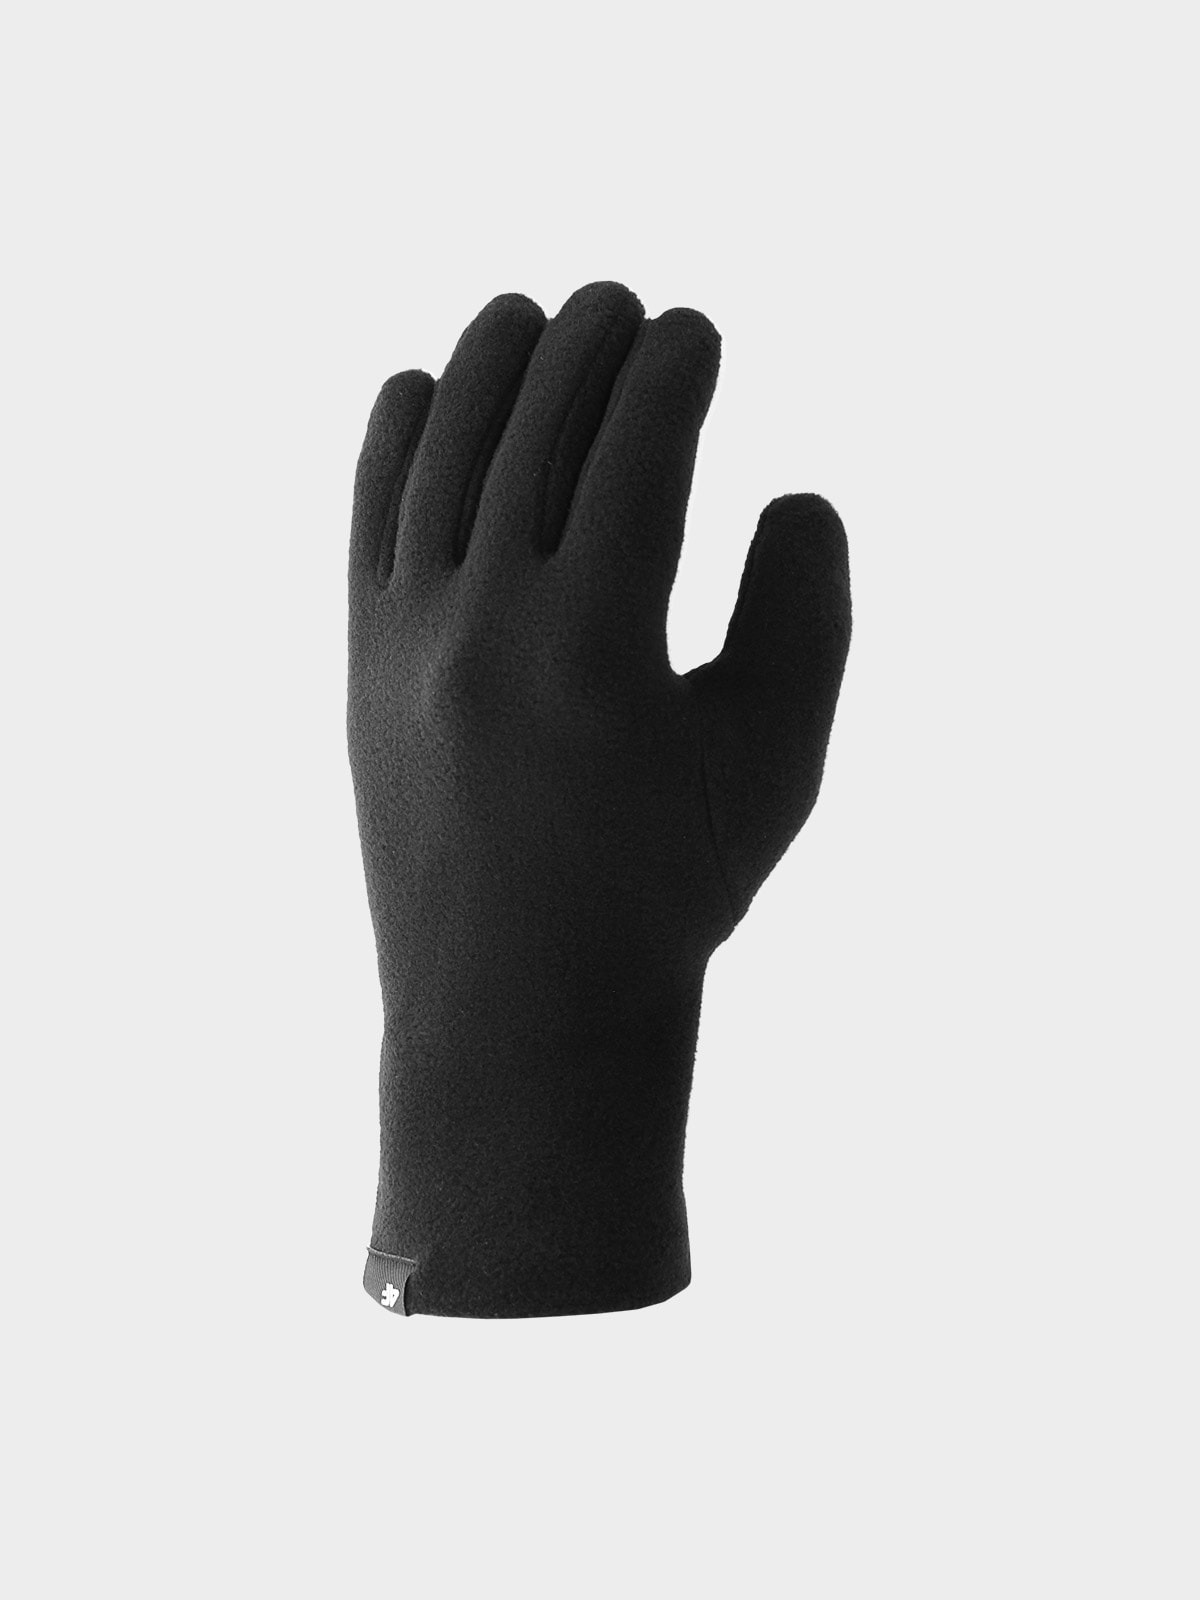 Unisex flísové rukavice - čierne